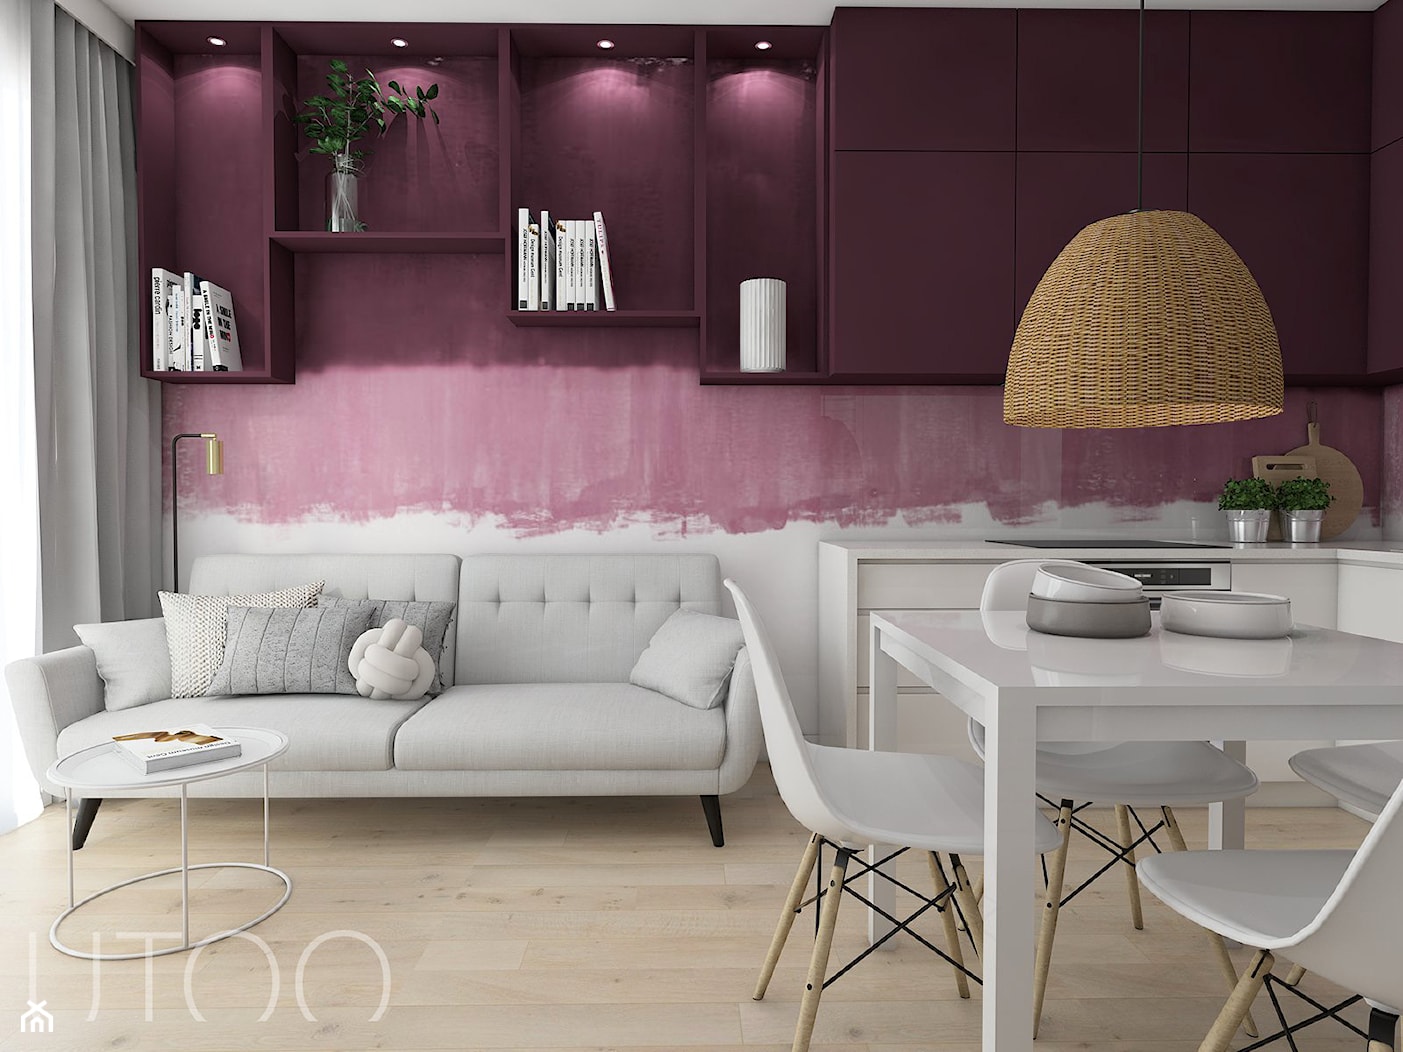 ŚLIWKOWY ZAWRÓT GŁOWY - Mały biały fioletowy różowy salon z kuchnią z jadalnią, styl skandynawski - zdjęcie od UTOO- pracownia architektury wnętrz i krajobrazu - Homebook